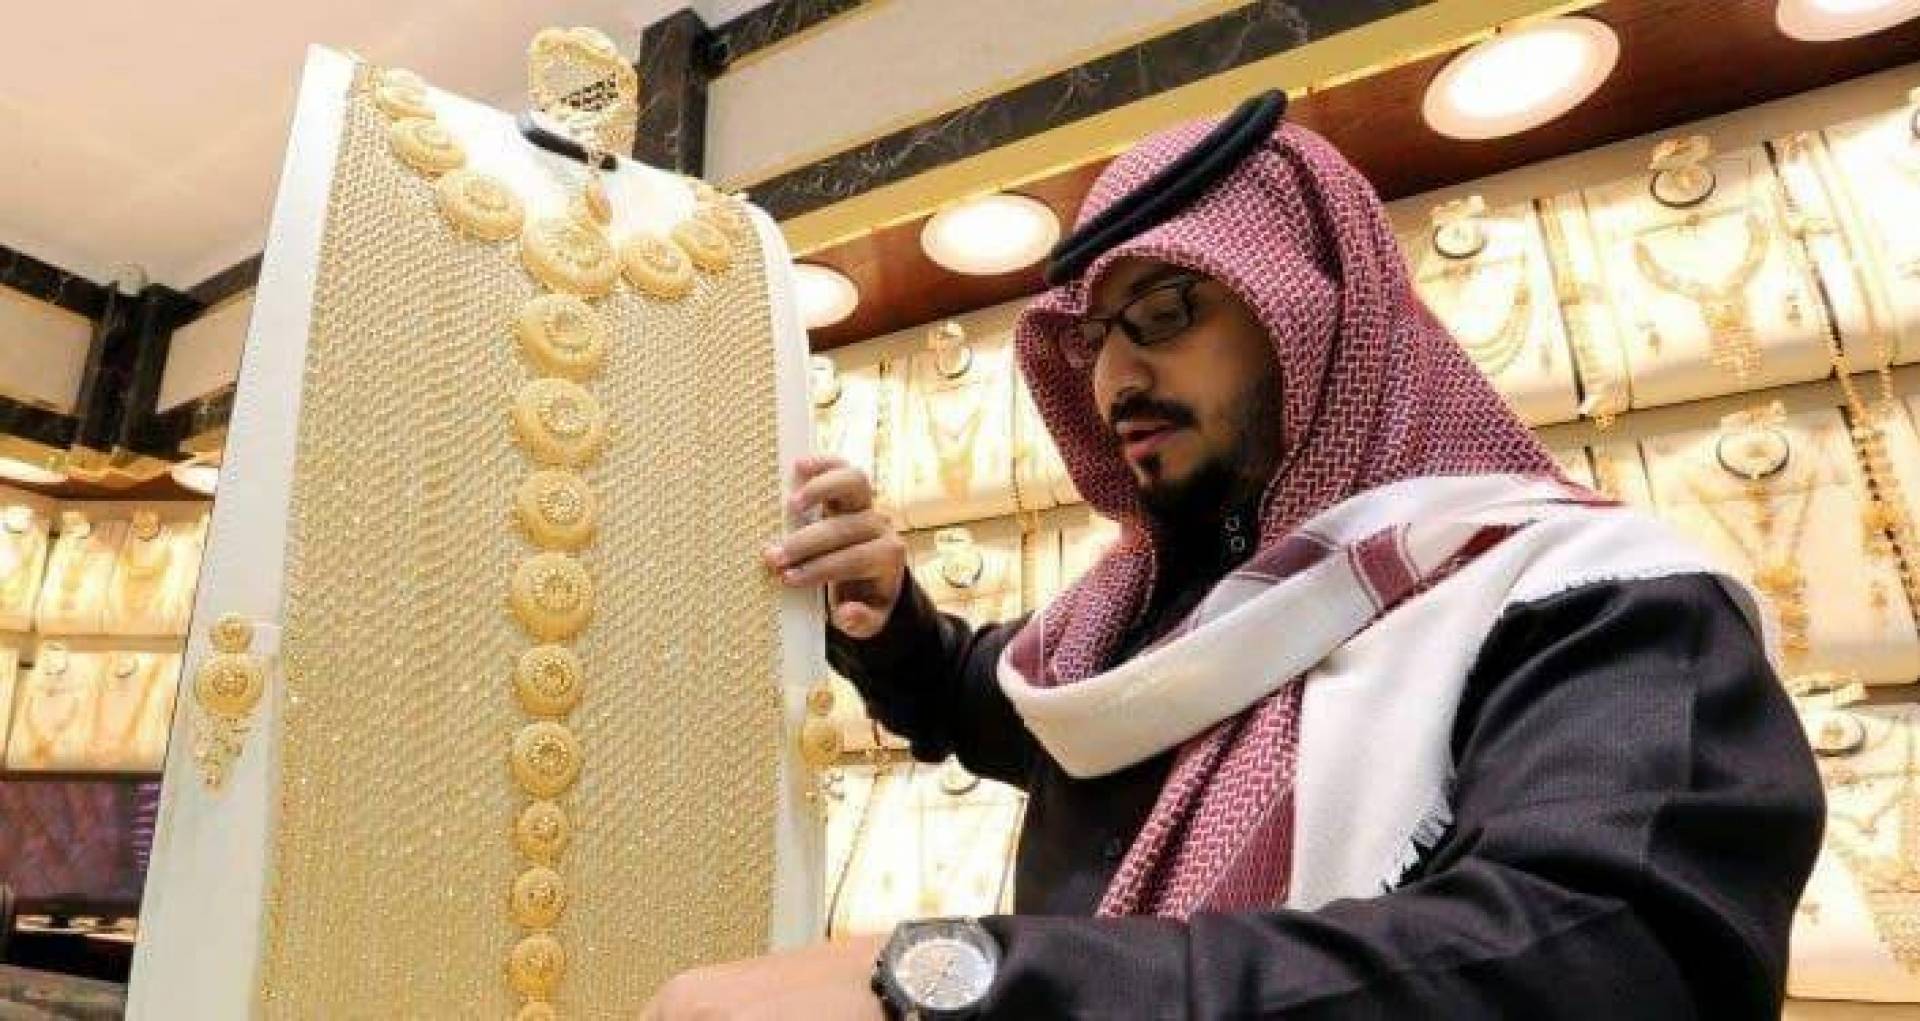 الذهب السعوديه اسعار أسعار الذهب